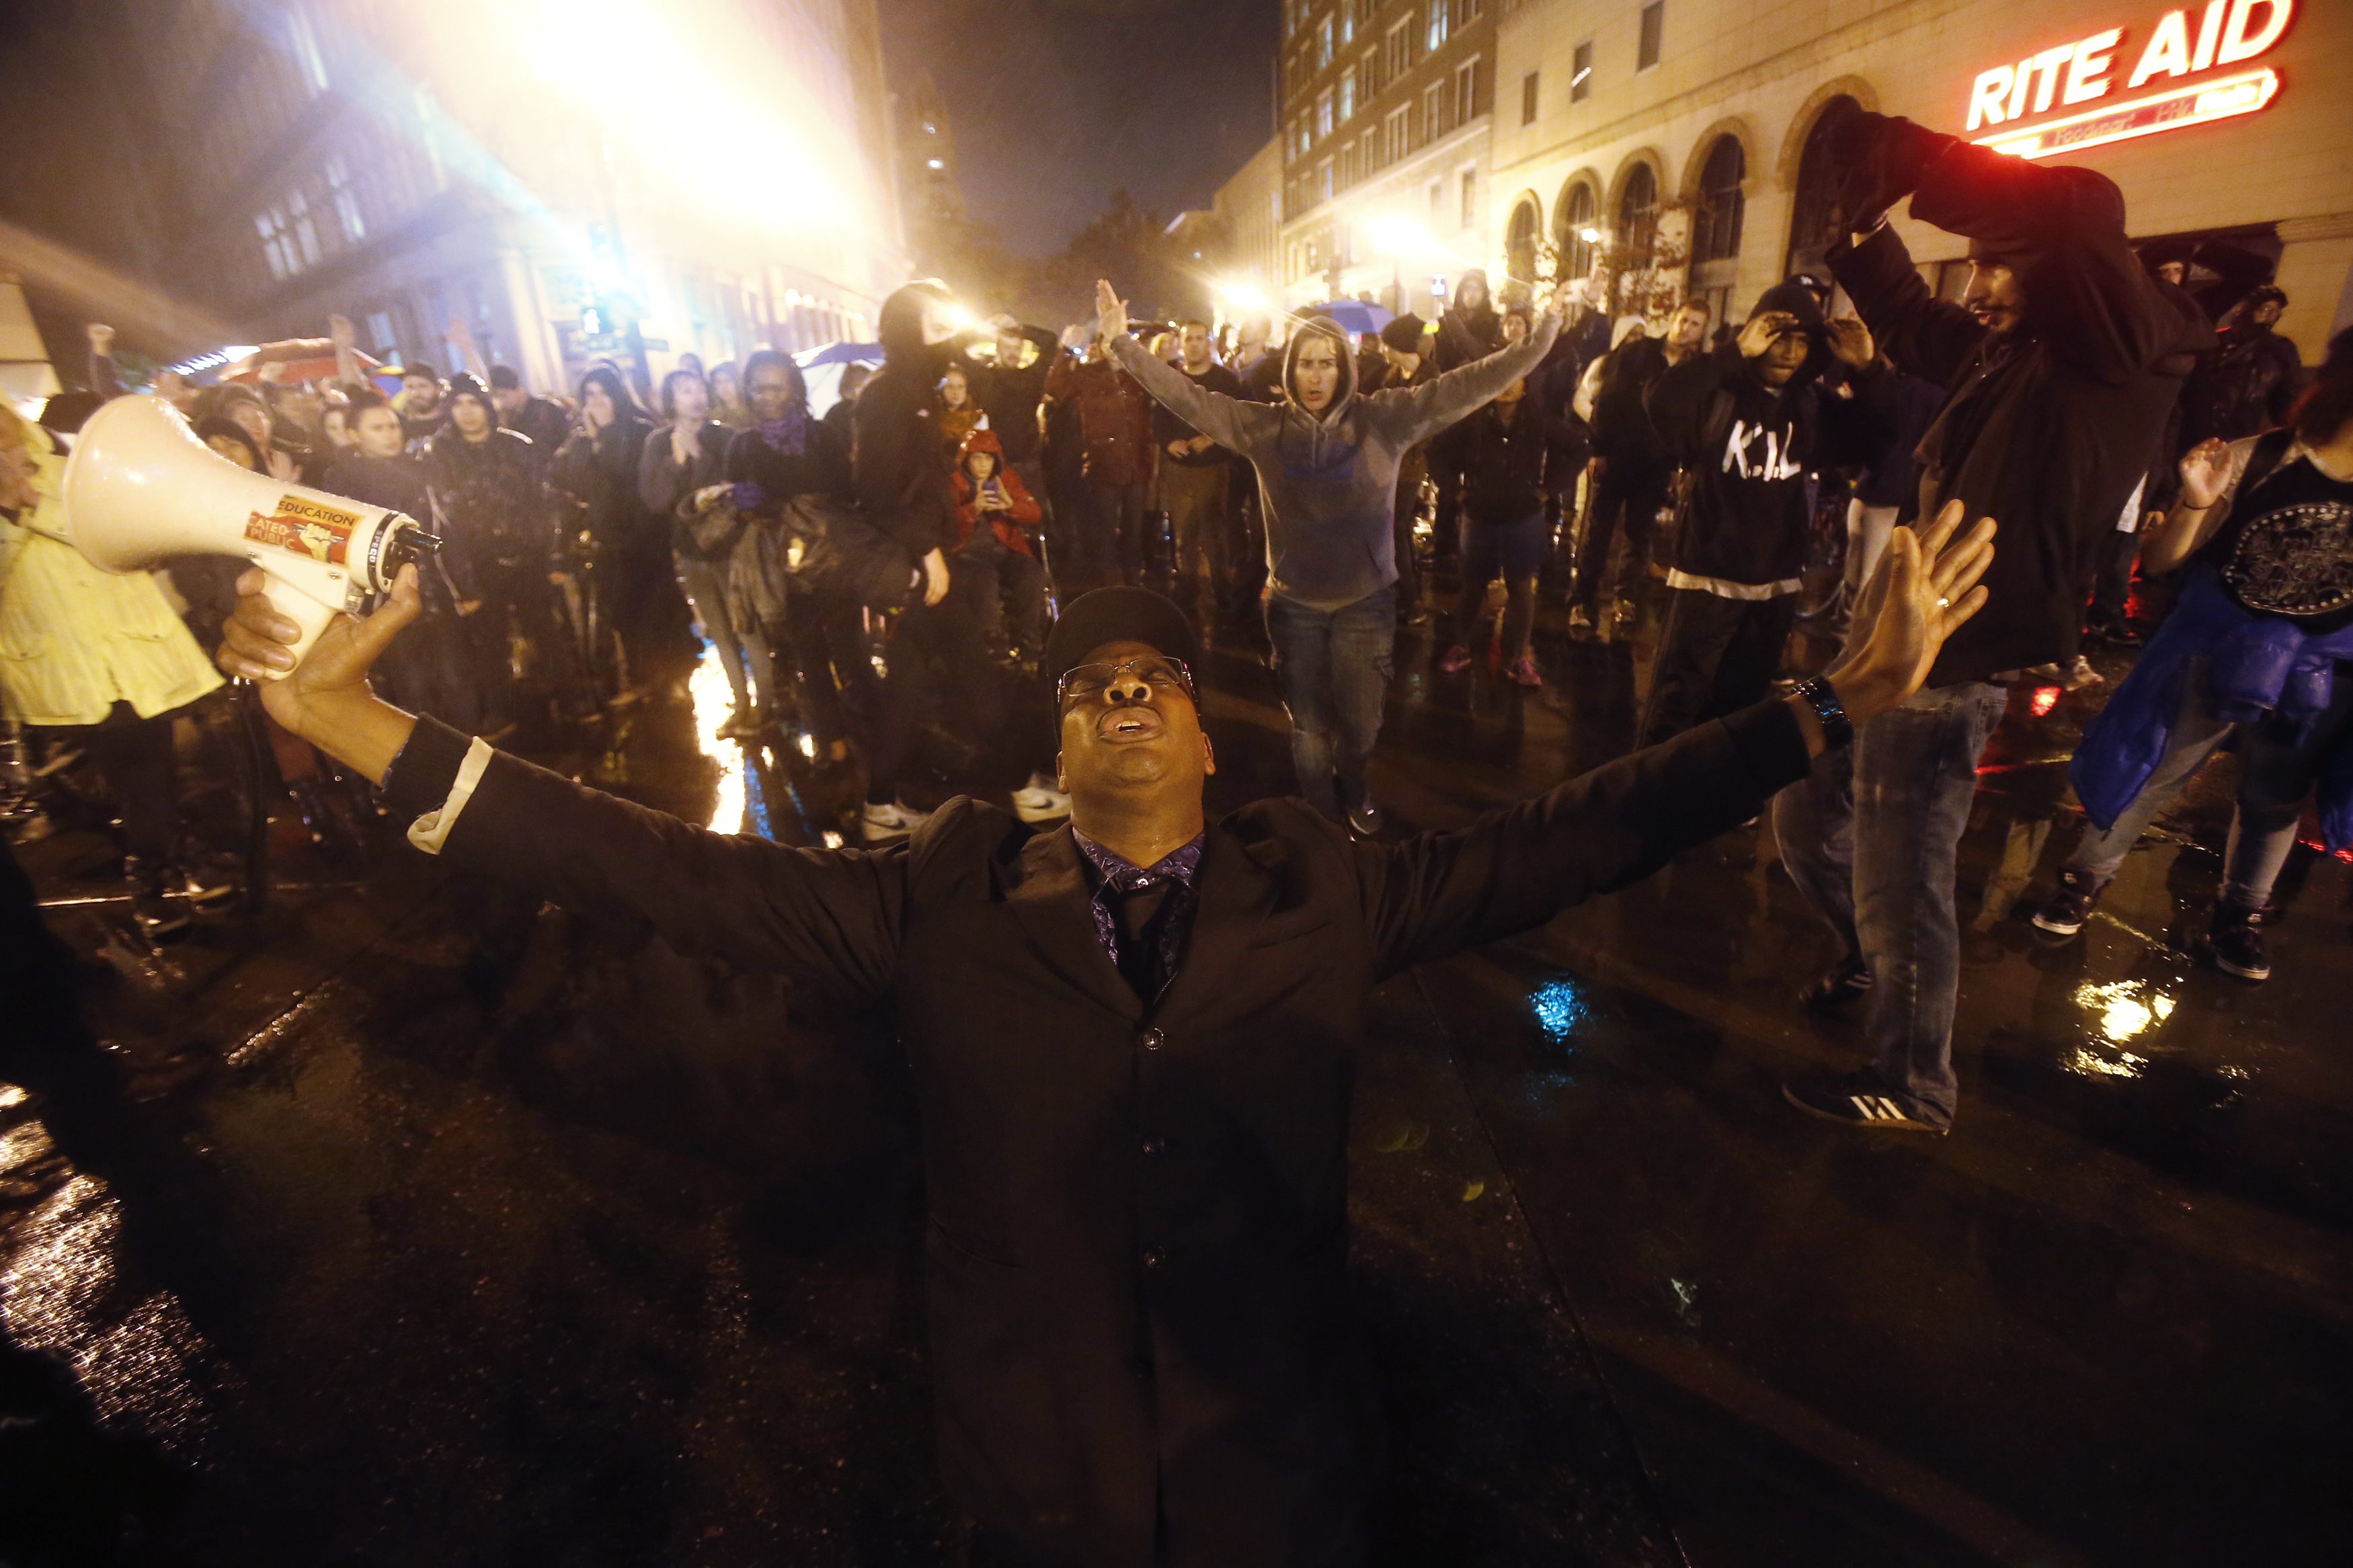 Son 83 los detenidos durante protestas en Nueva York (Fotos)